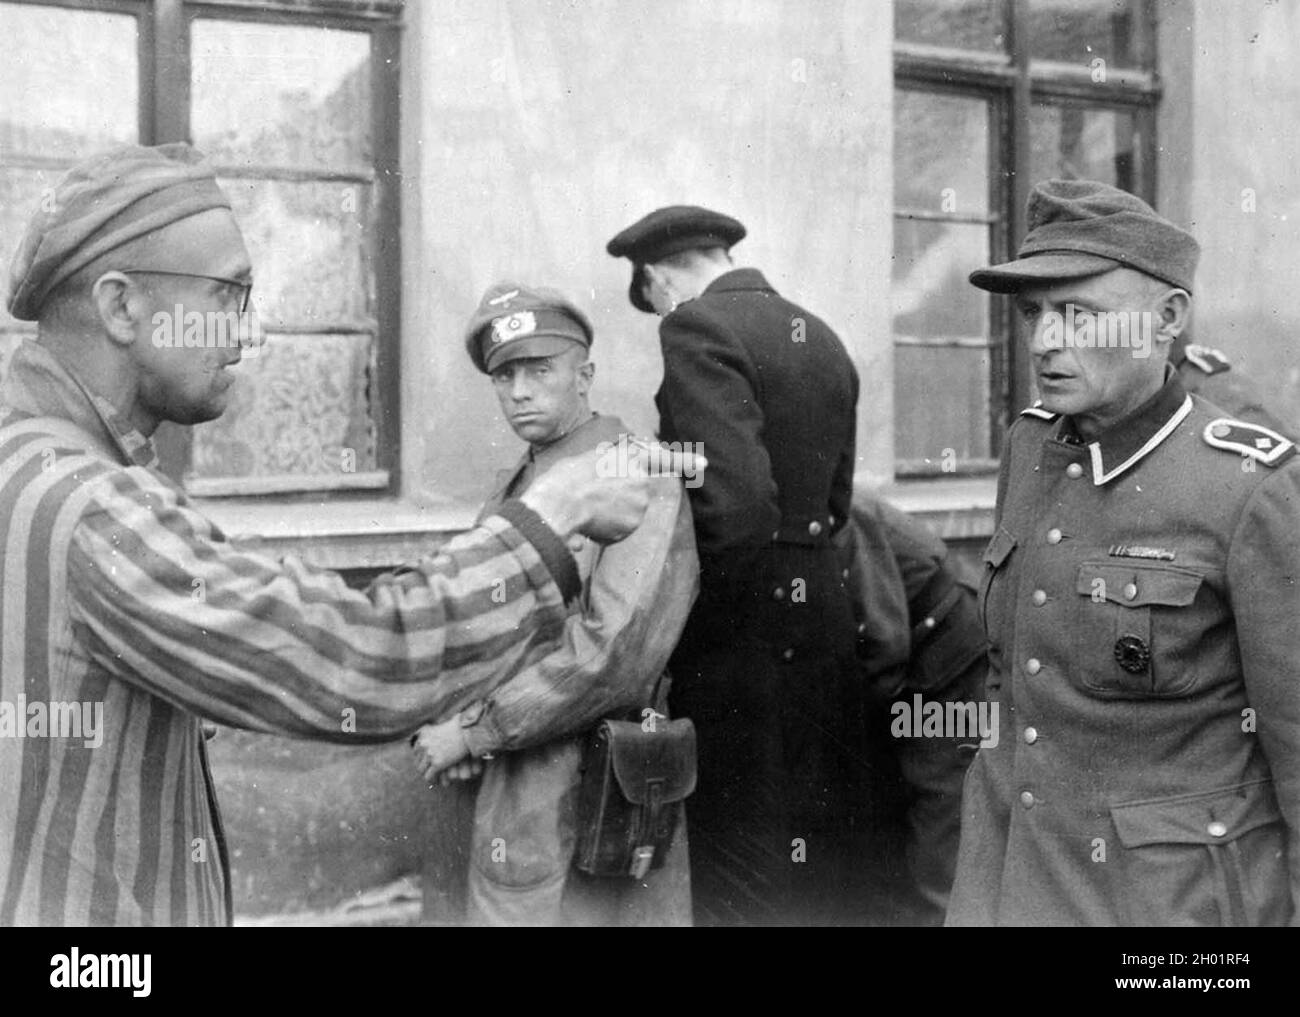 Un survivant russe, libéré par la 3e division blindée de la première armée américaine, identifie un ancien garde de camp qui a brutalement battu les prisonniers le 14 avril 1945, au camp de concentration de Buchenwald, en Thuringe, en Allemagne Banque D'Images